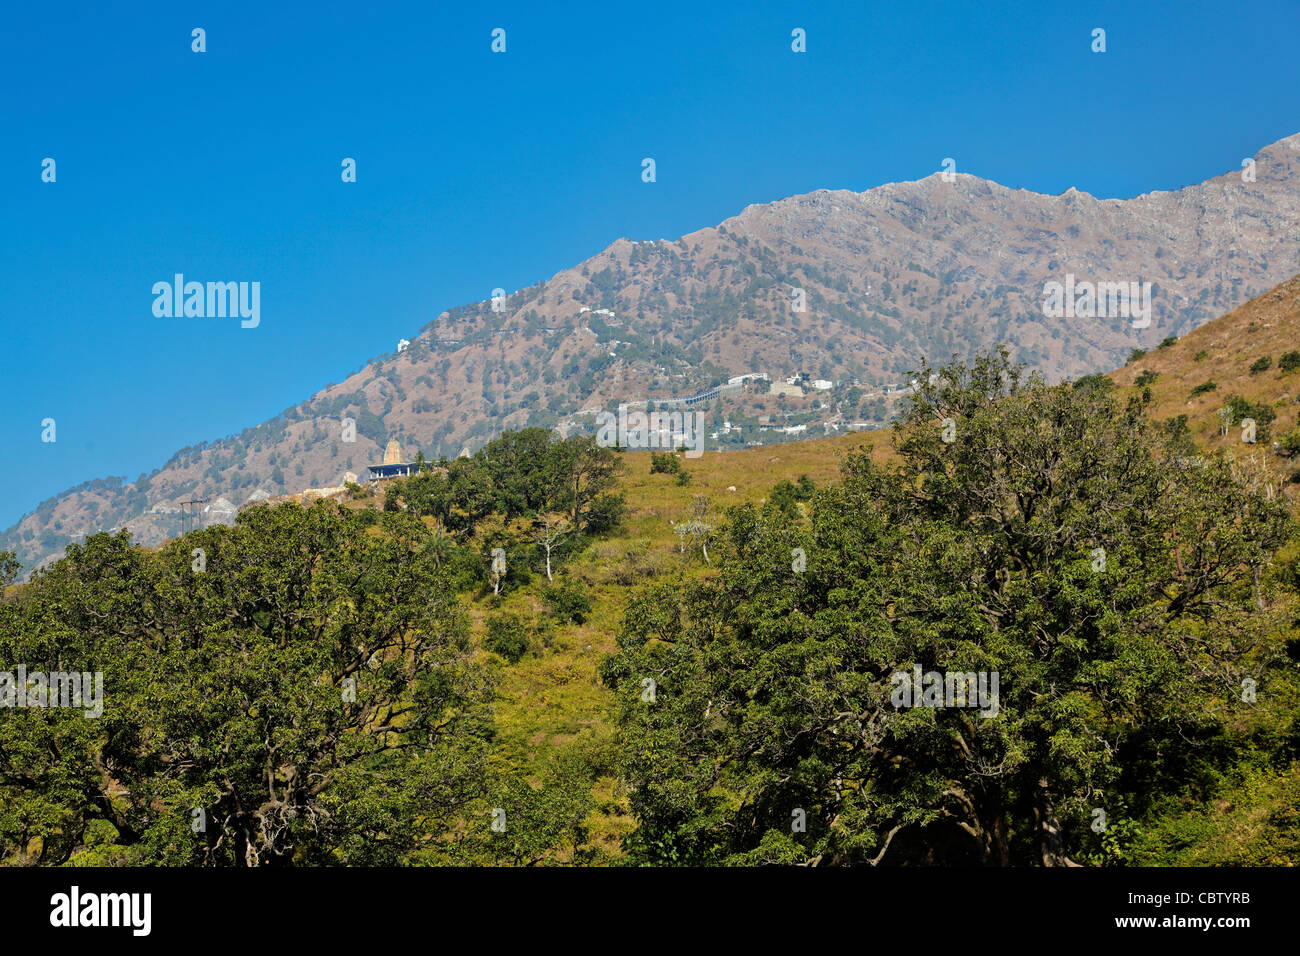 Paysage de montagne l'Trikuta Vaishno Devi peak de l'héliport à Katra, Himalaya copie espace avec les marges des cultures Banque D'Images